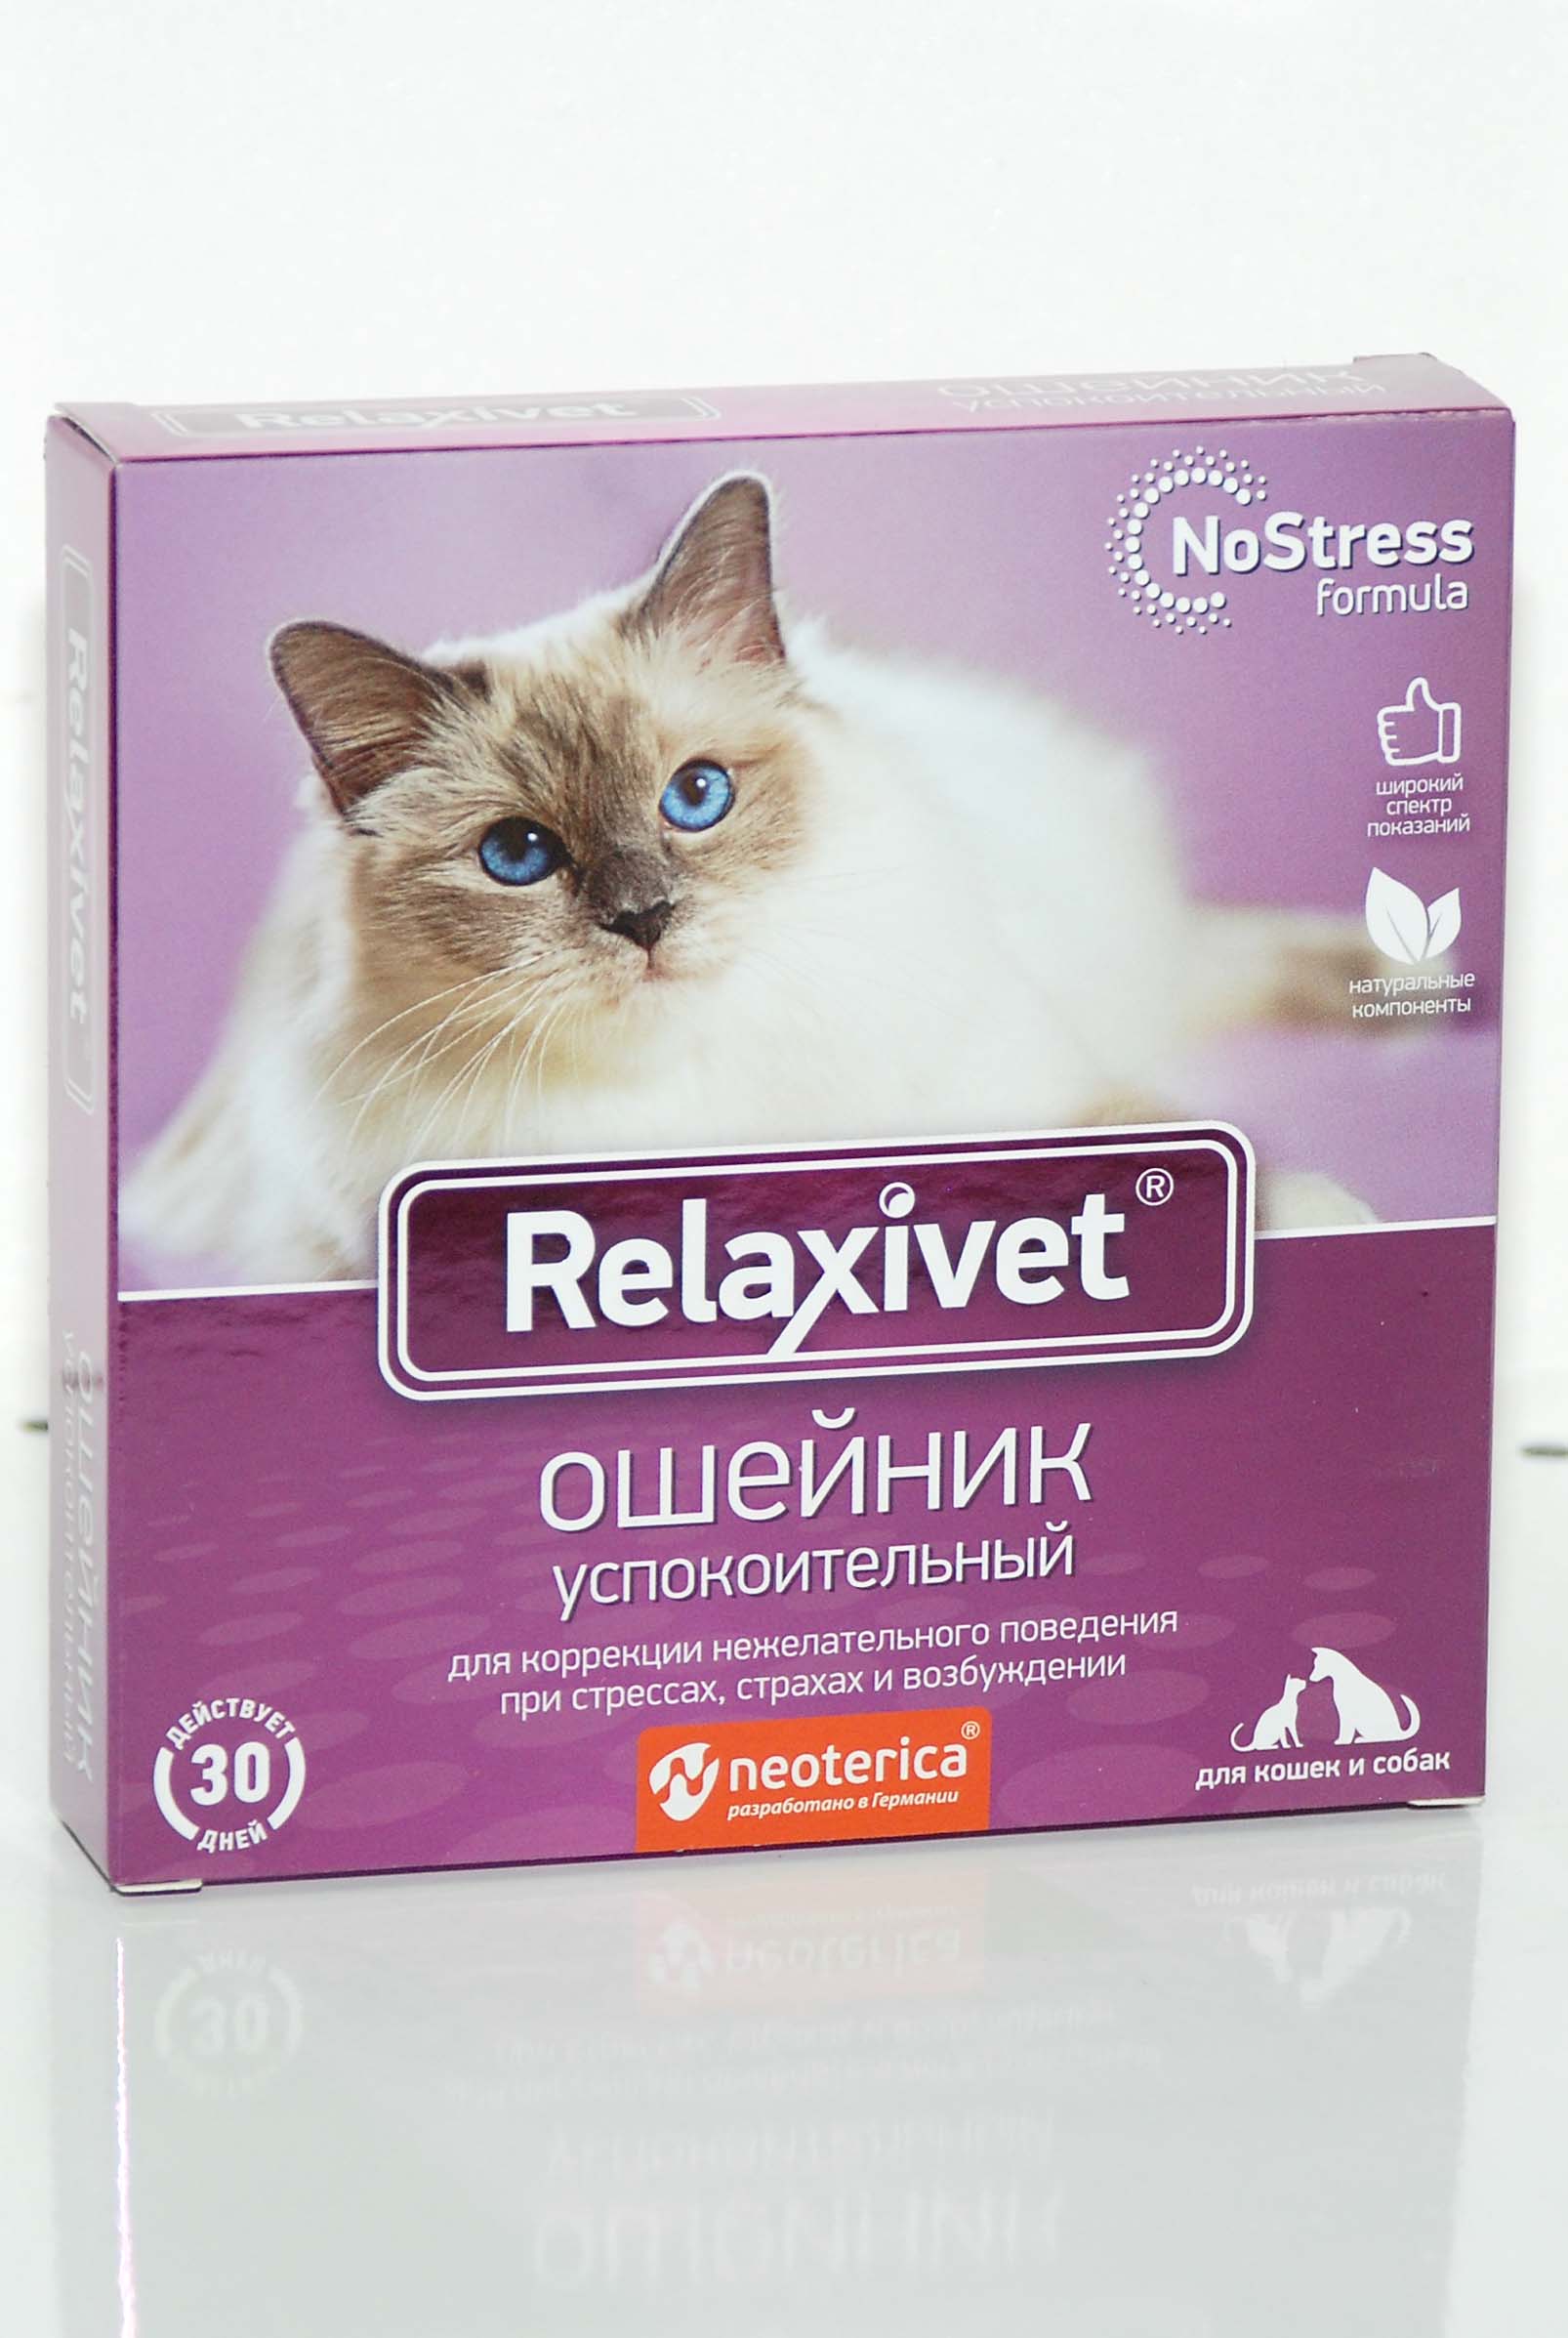 Успокоительные релаксивет. Релаксивет ошейник для кошек. Relaxivet диффузор + жидкость успокоительная для кошек и собак, 45мл x102,. Relaxivet Relaxivet ошейник успокоительный. Релаксивет диффузор для кошек.